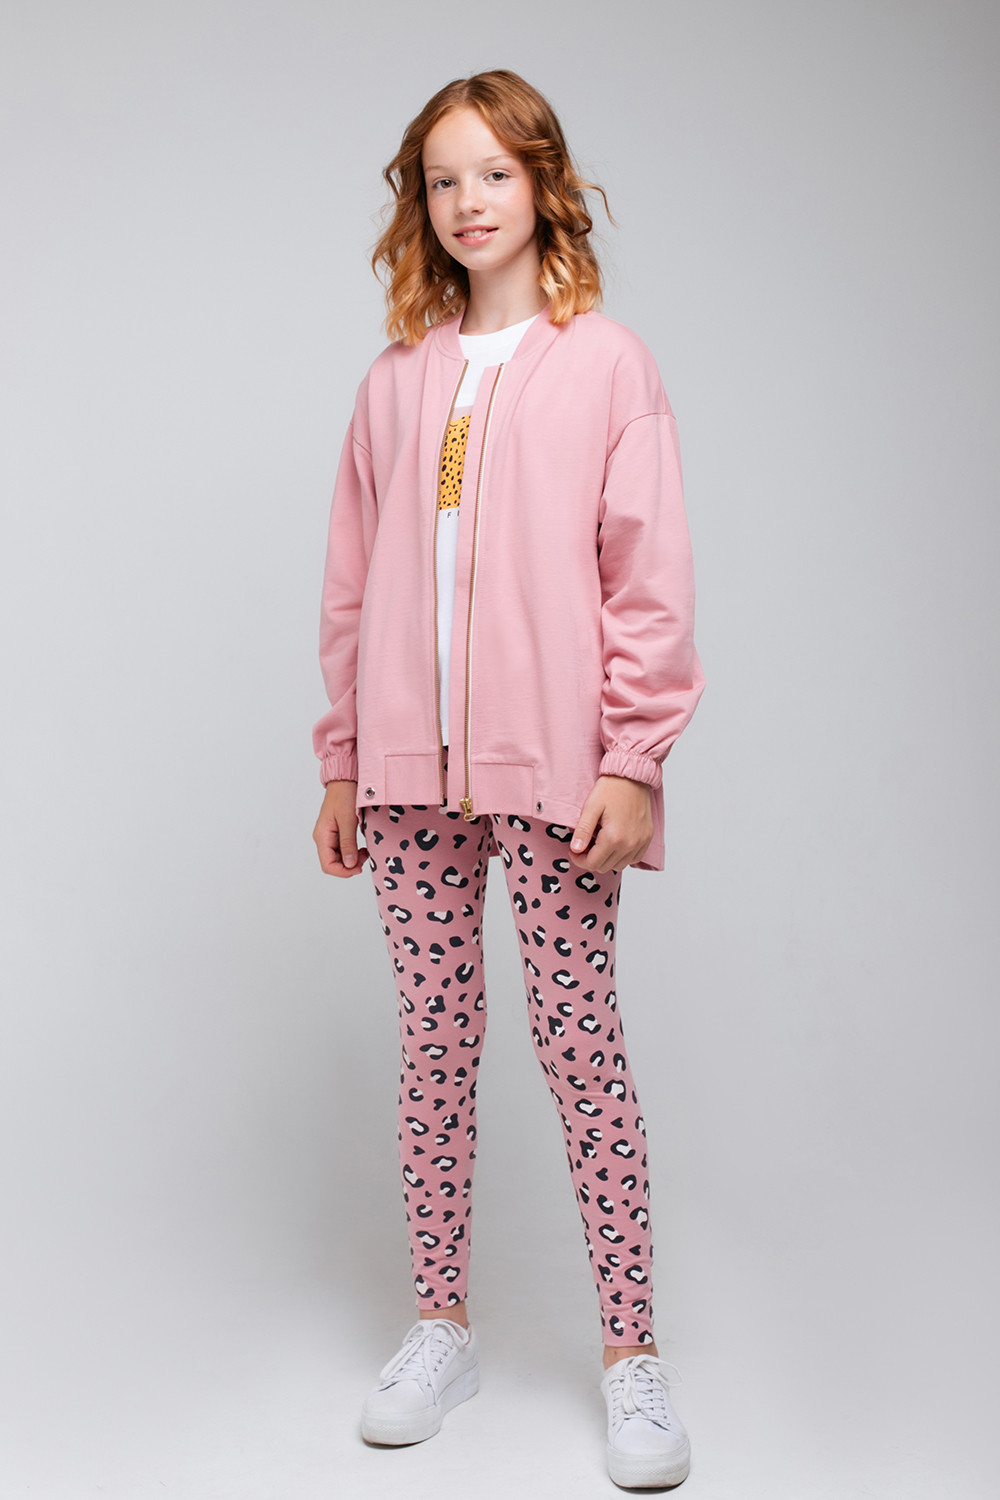 картинка Бриджи для девочки КБ 4763 розовый зефир, леопард к74 от магазина детских товаров ALiSa